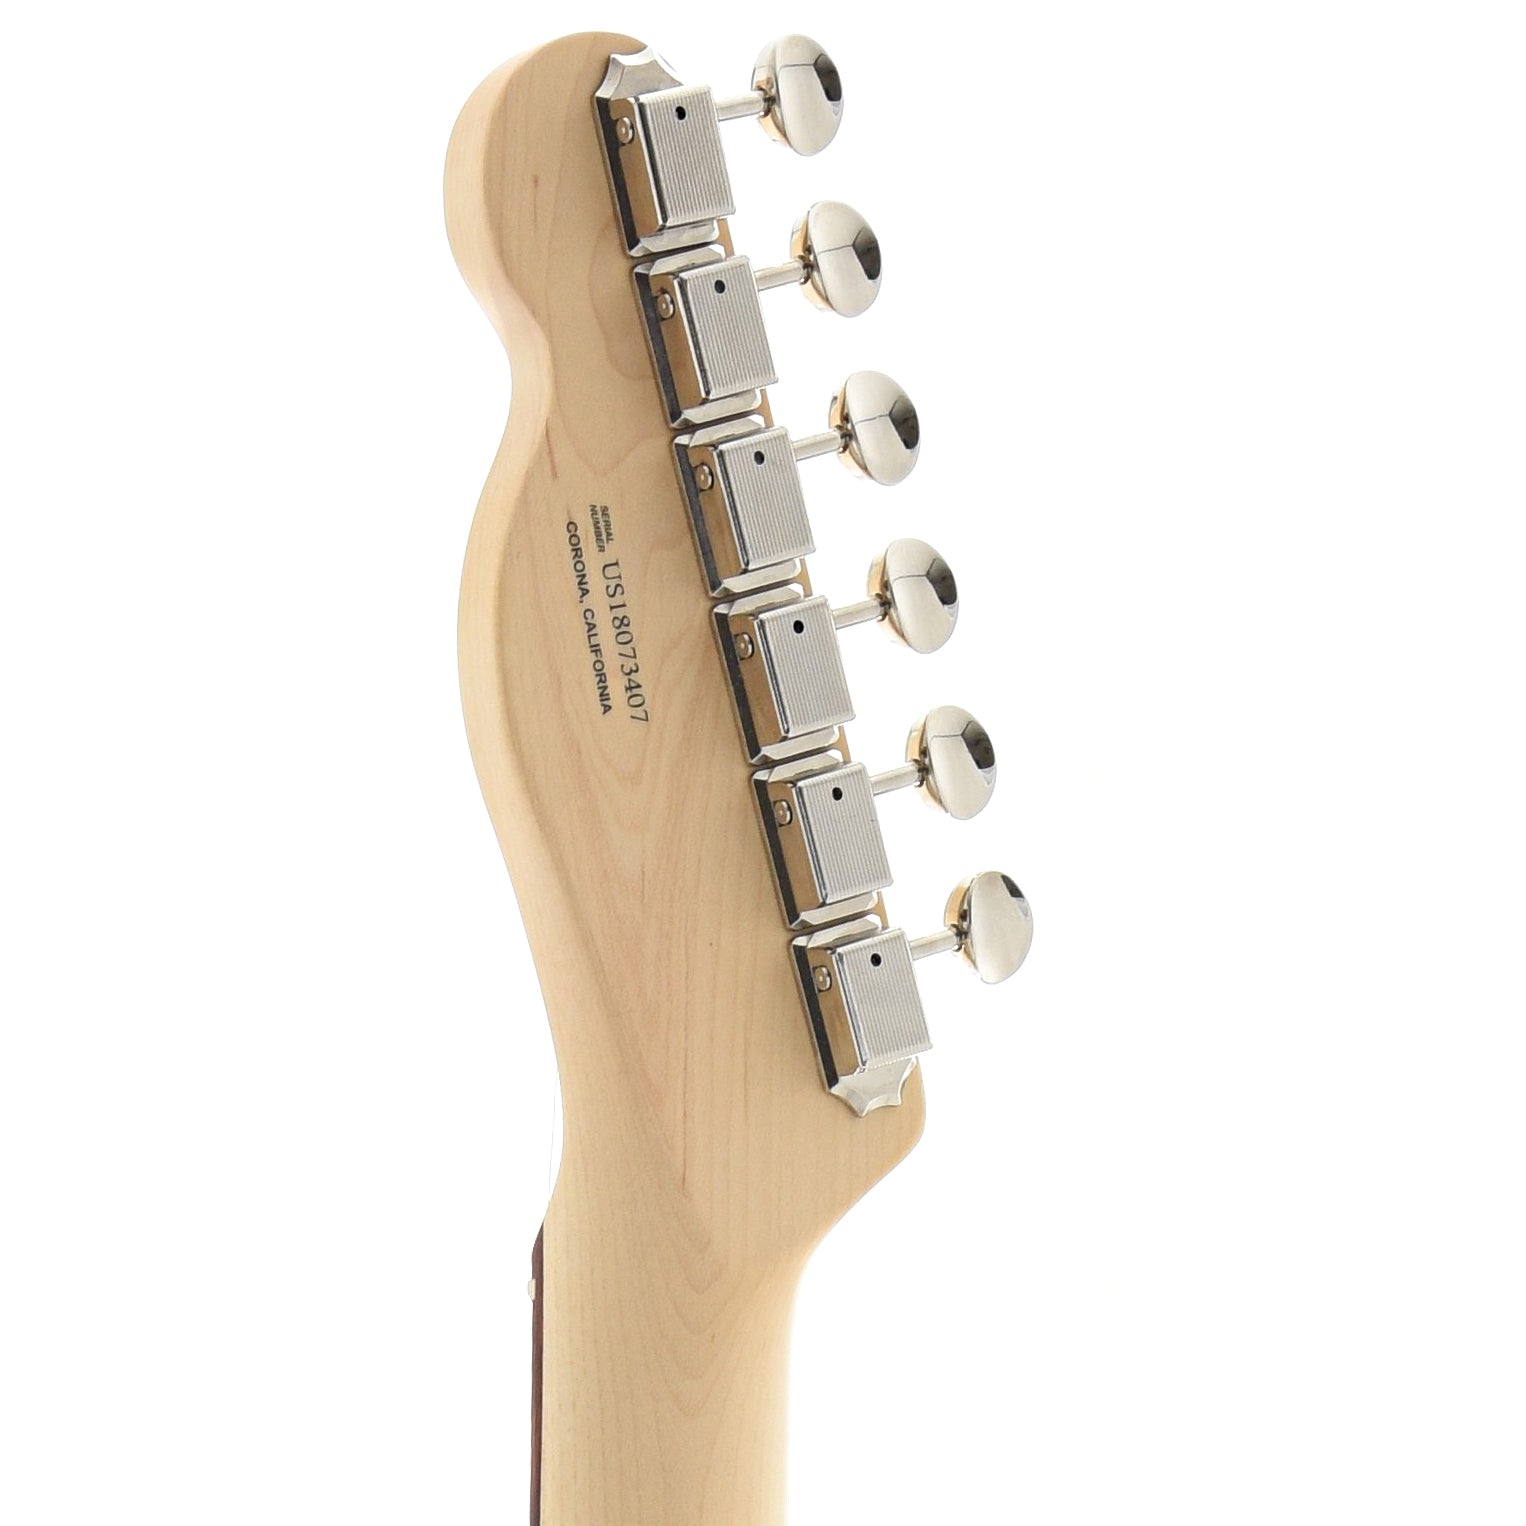 Back Headstock of Fender American Performer Telecaster